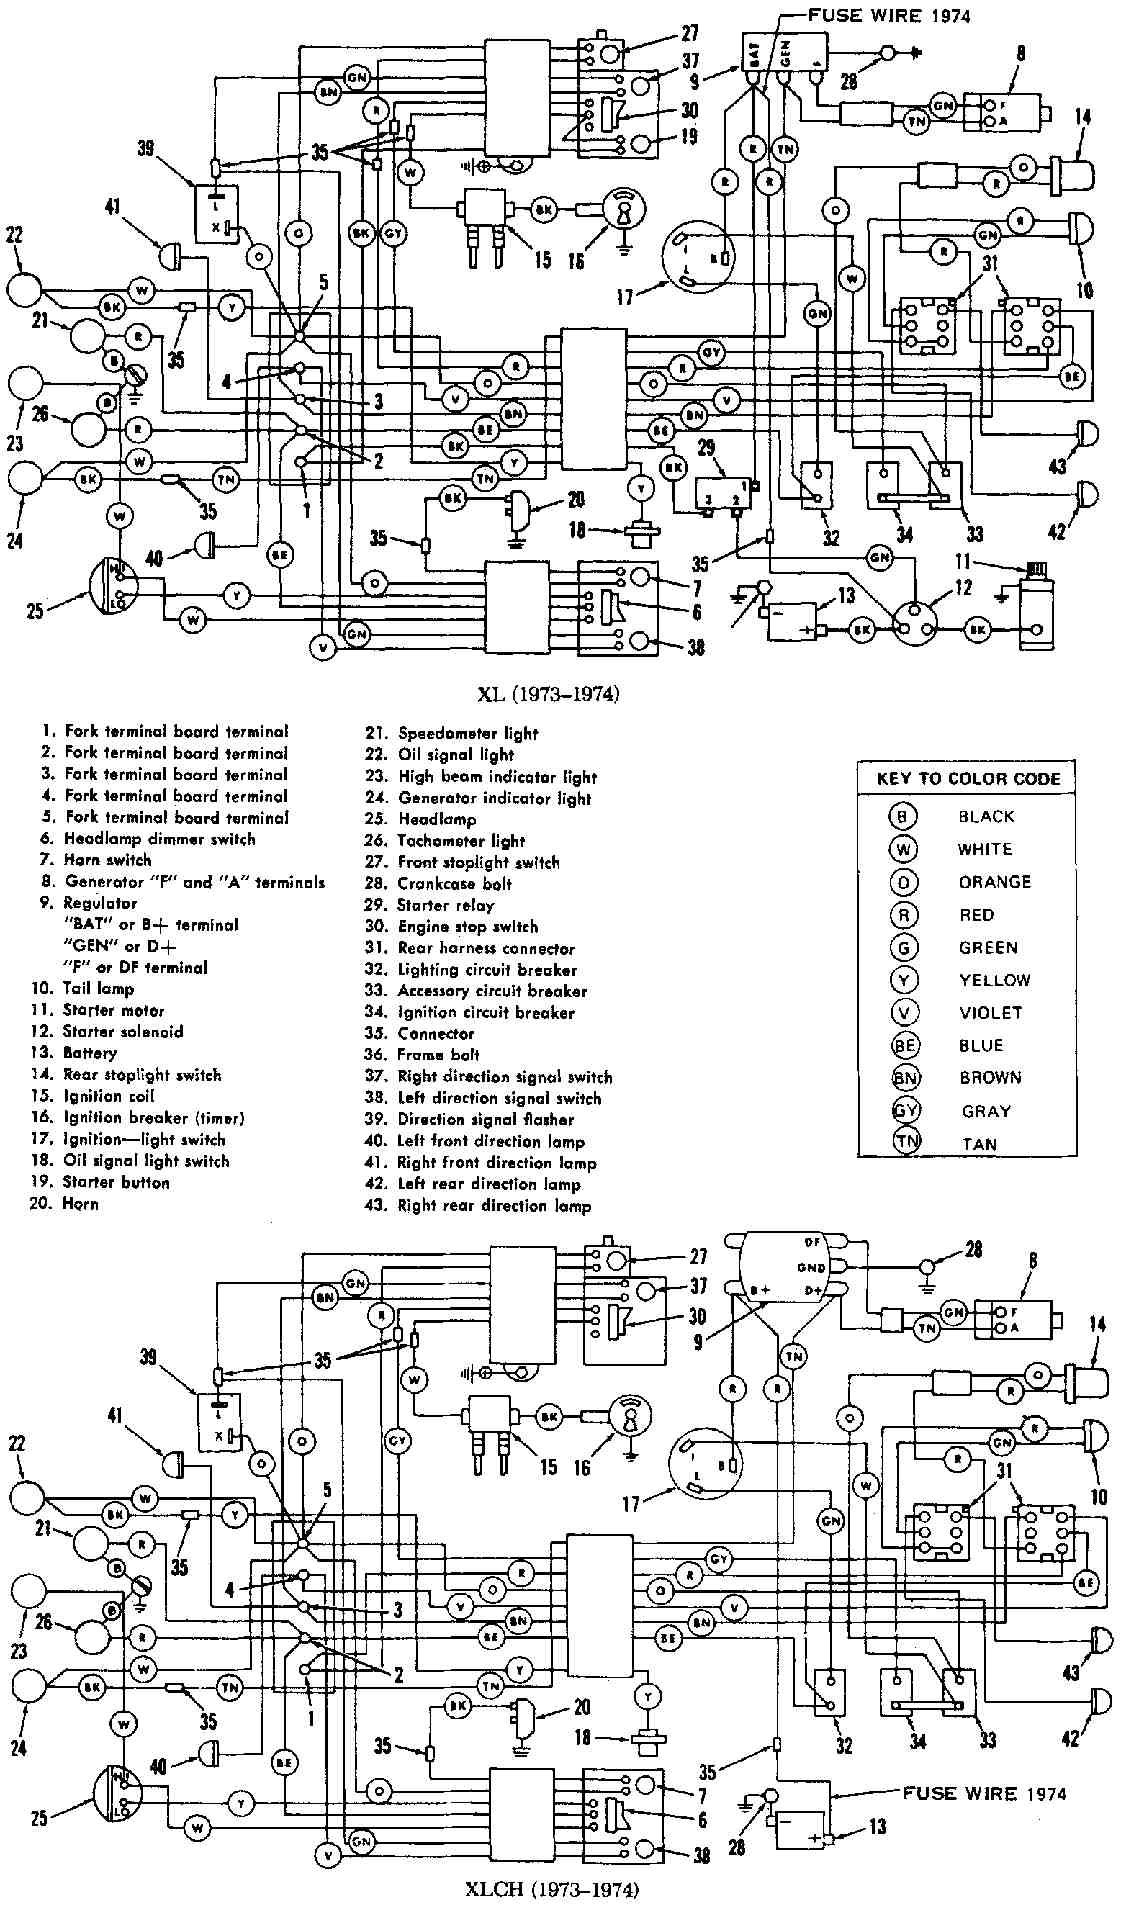 HARLEY DAVIDSON - Motorcycles Manual Pdf, Wiring Diagram & Fault Codes Harley Dyna Wiring-Diagram MOTORCYCLE Manuals PDF & Wiring Diagrams